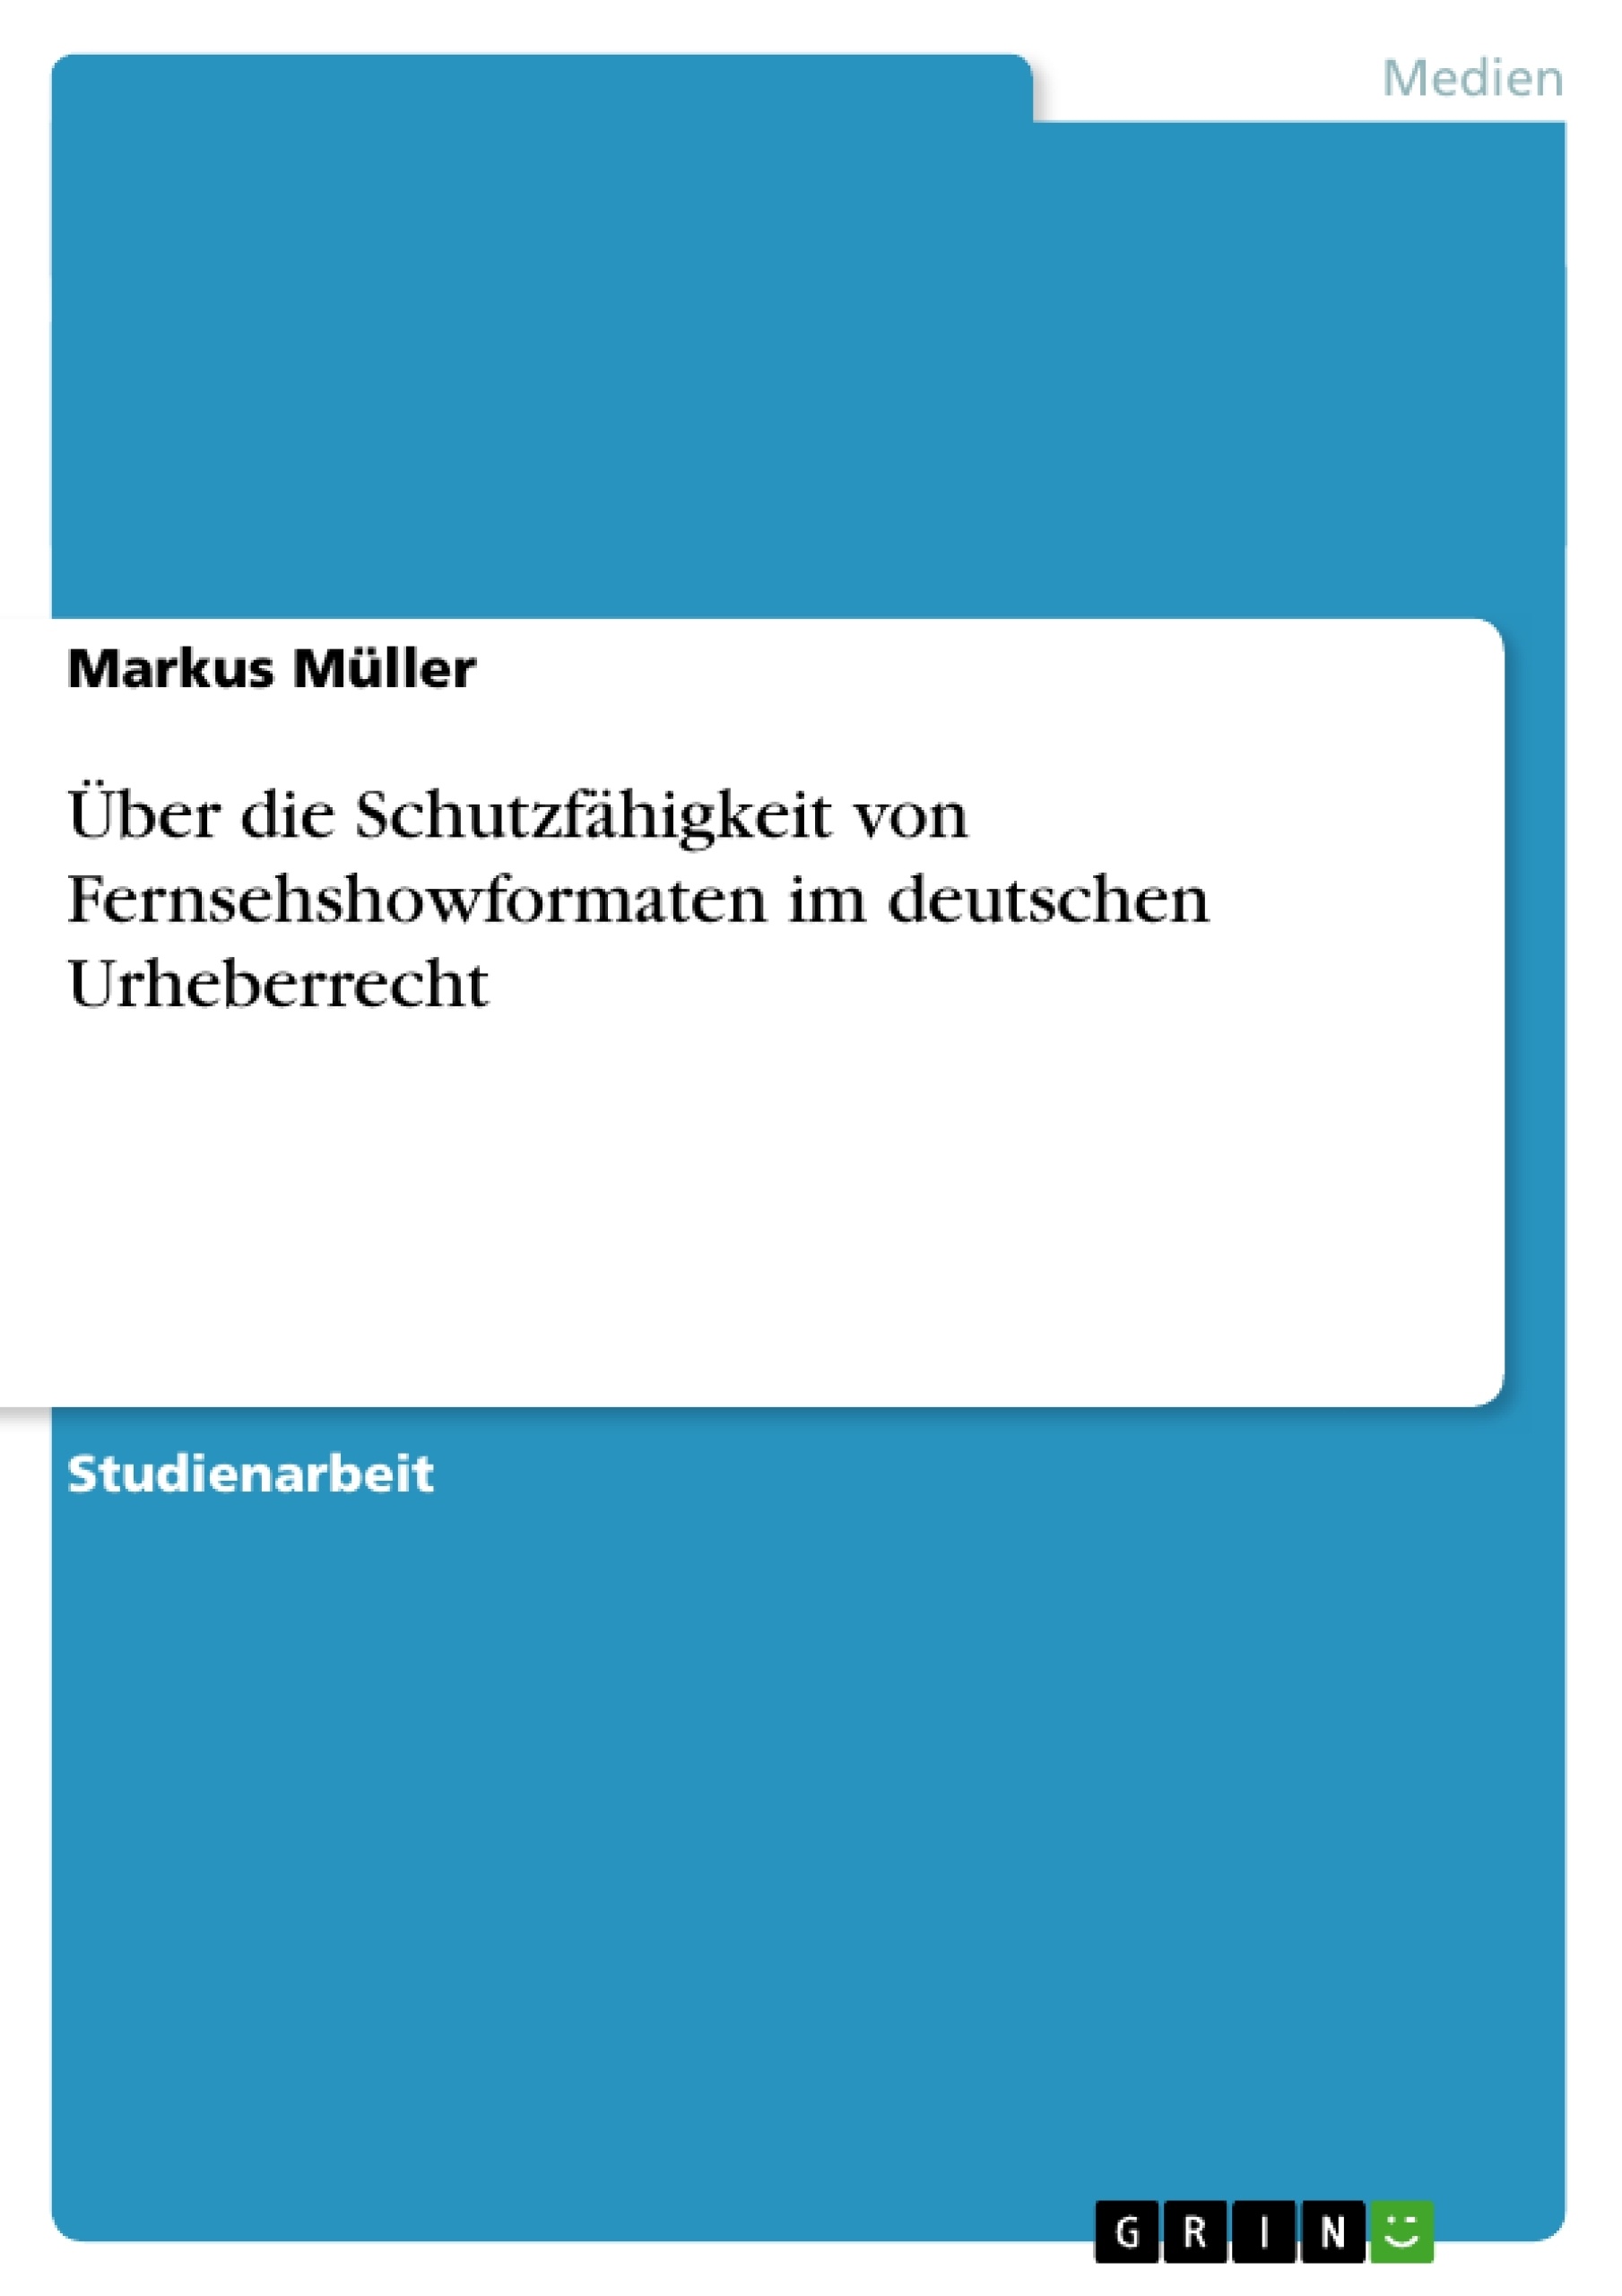 Titel: Über die Schutzfähigkeit von Fernsehshowformaten im deutschen Urheberrecht